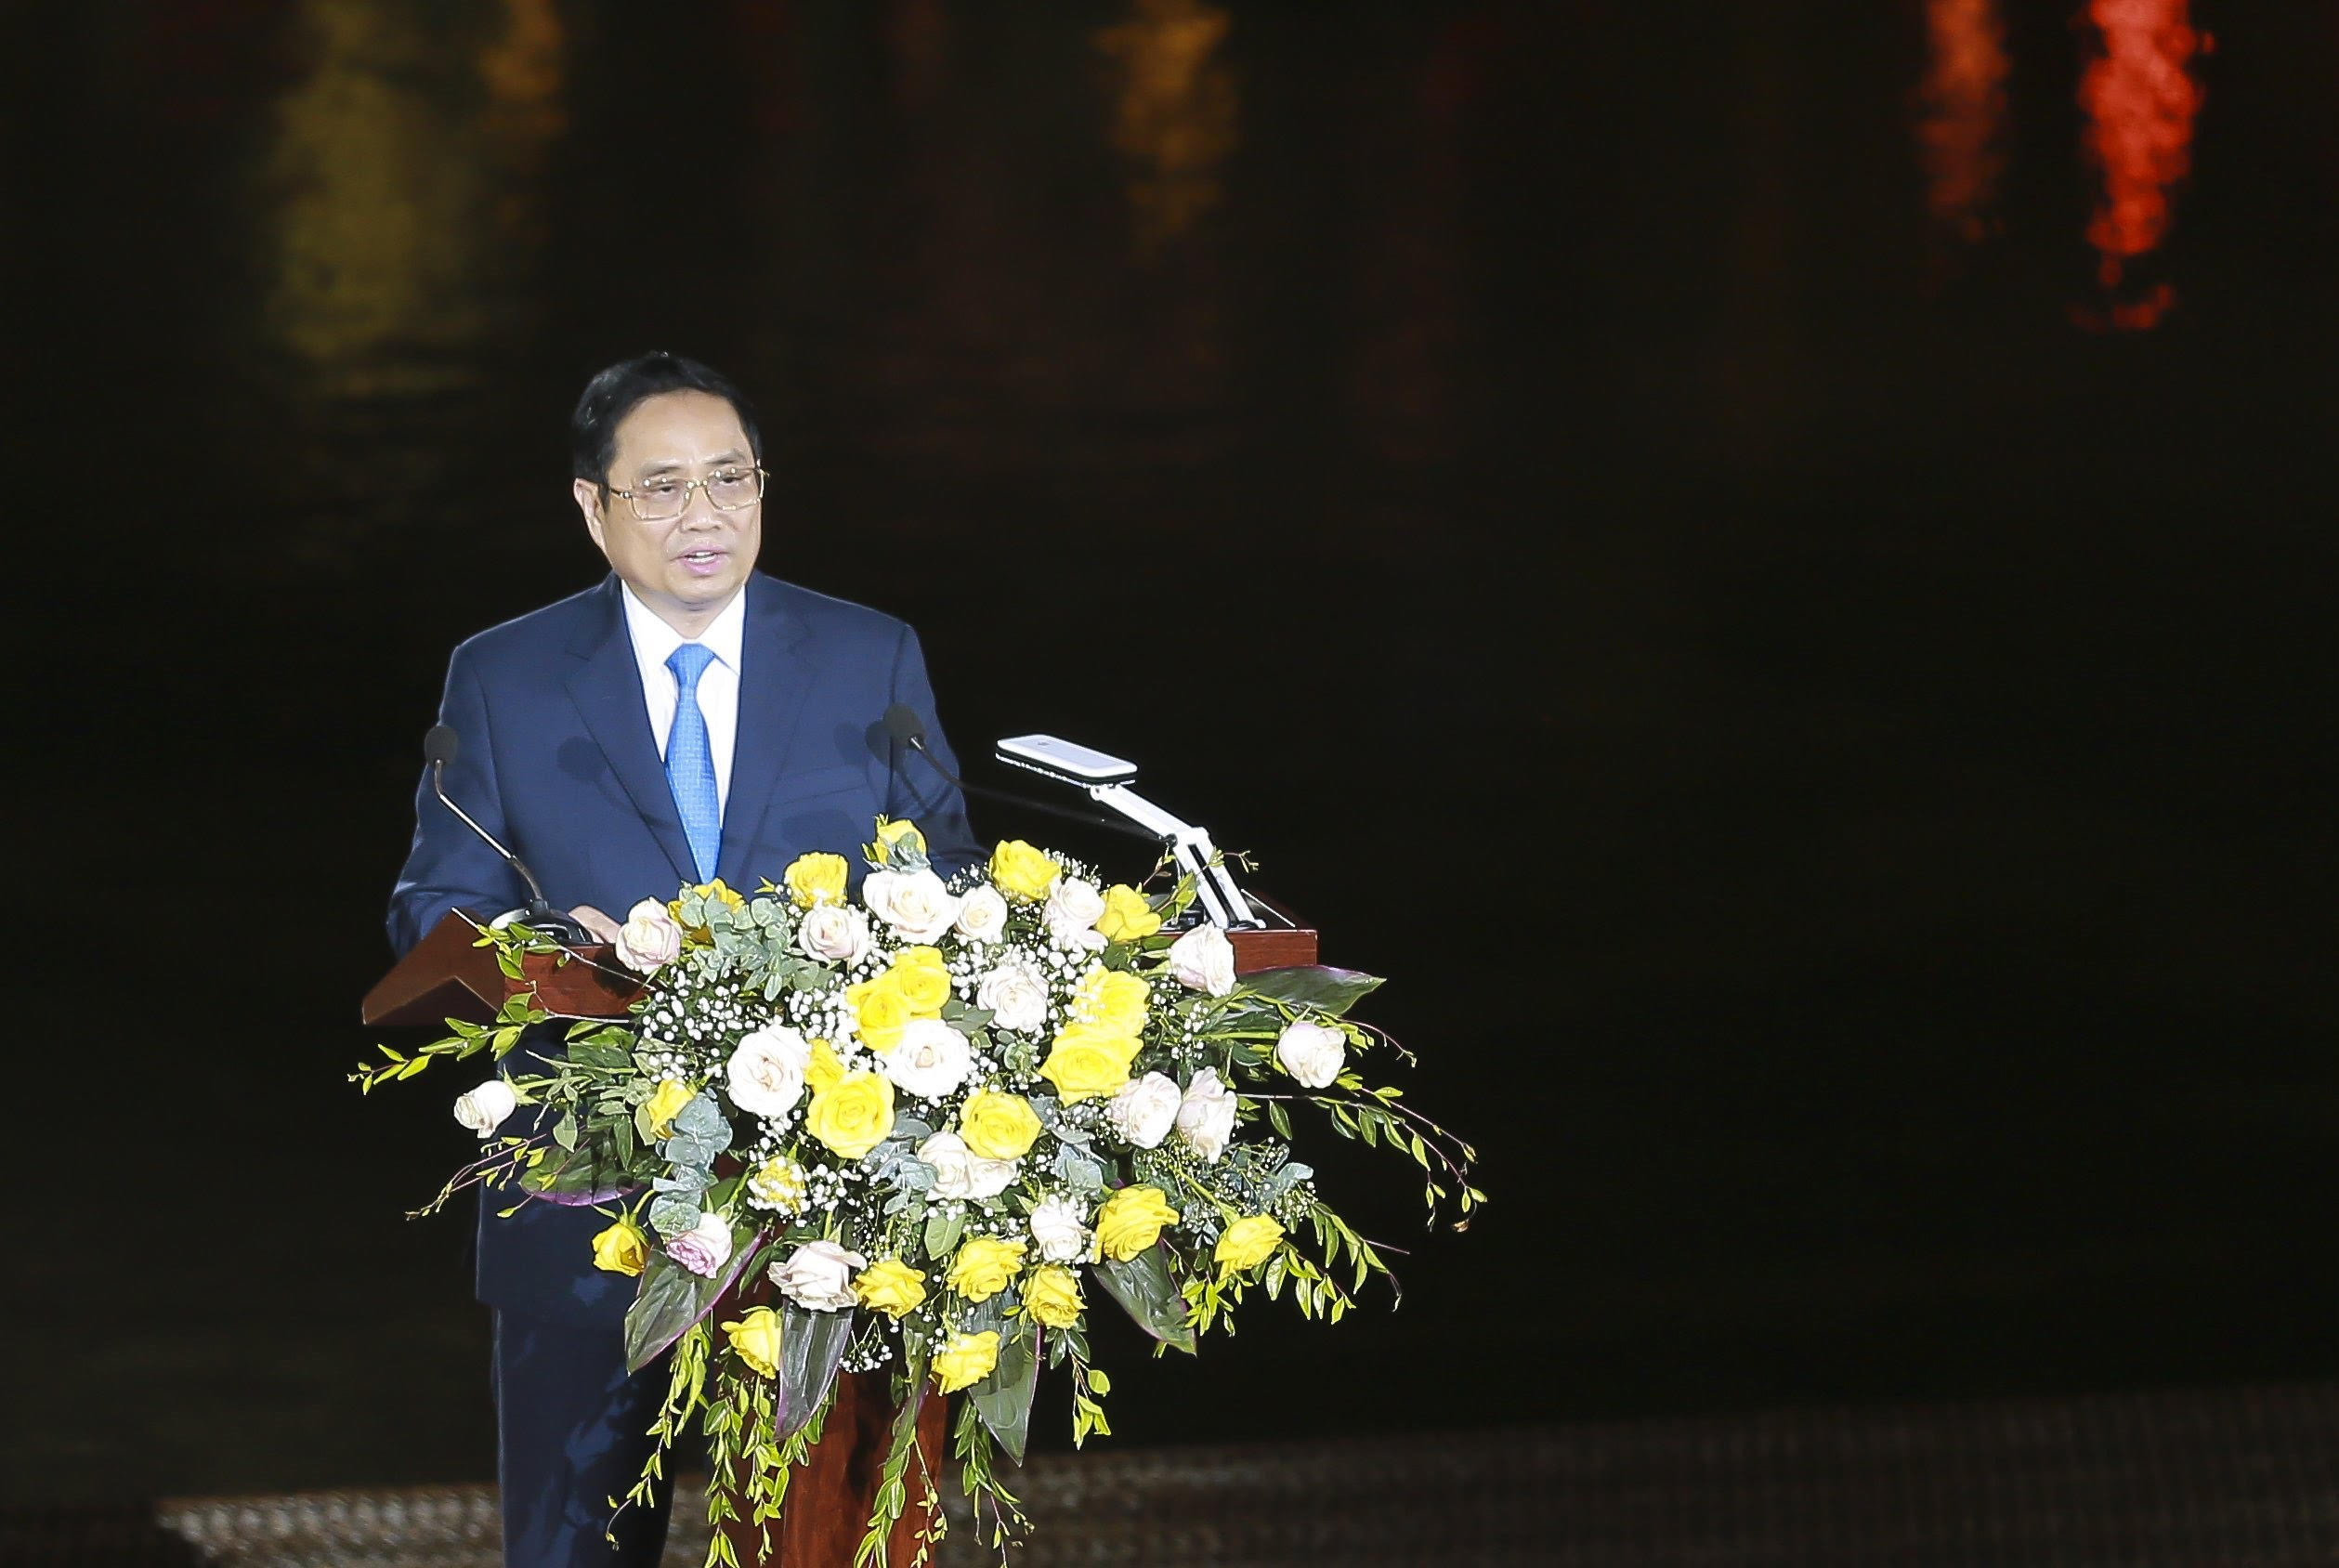 Thủ tướng Chính phủ Phạm Minh Chính nhấn manh: “Lễ Khai mạc Năm Du lịch Quốc gia 2022 là một trong những sự kiện quan trọng, đánh dấu cho hoạt động mở cửa du lịch trở lại và là sự kiện trọng tâm của Chương trình Năm Du lịch Quốc gia 2022”